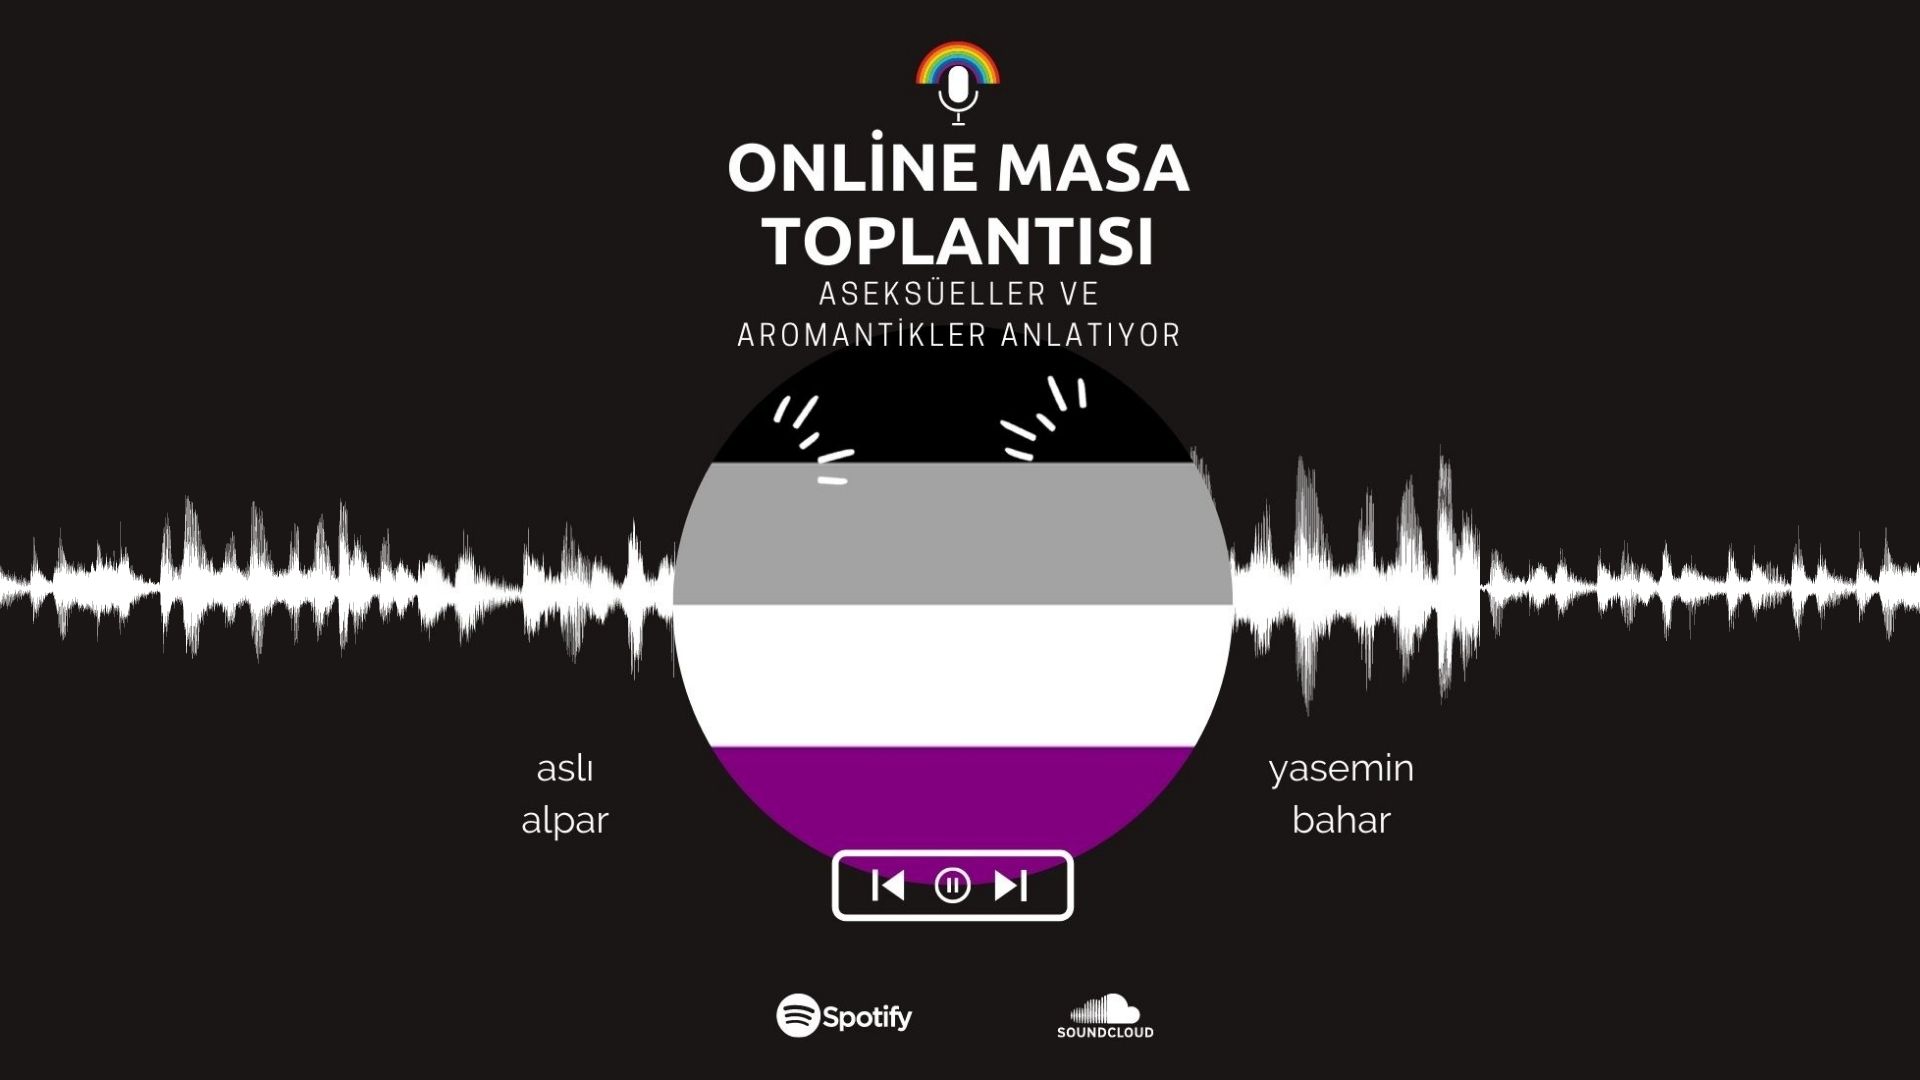 Podcast: Aseksüel ve aromantikler anlatıyor Kaos GL - LGBTİ+ Haber Portalı